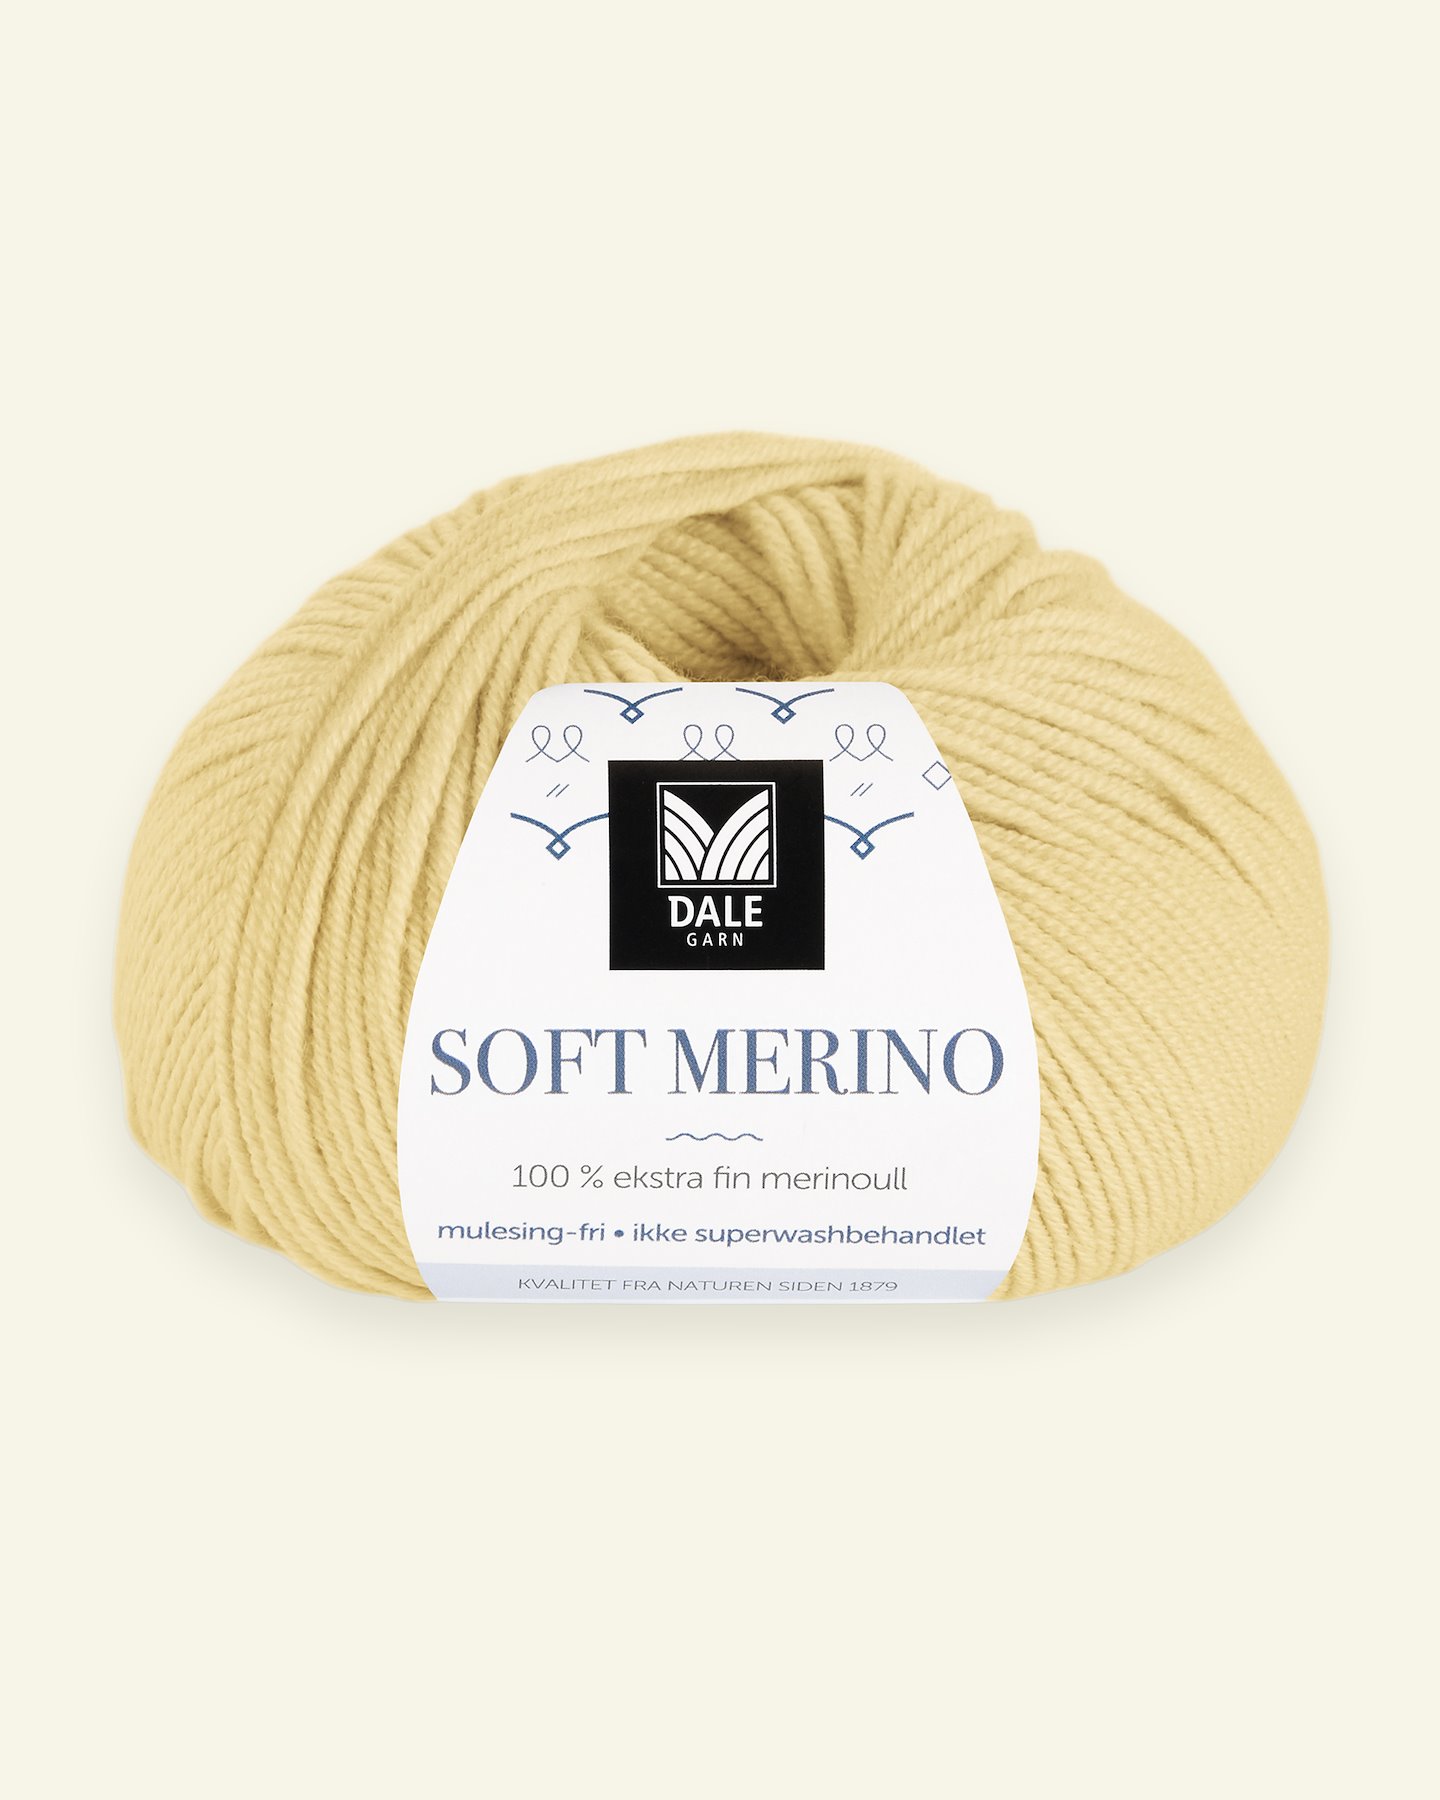 Dale Garn, 100% extra fine merino wool yarn, "Soft Merino", light yellow 90000330_pack